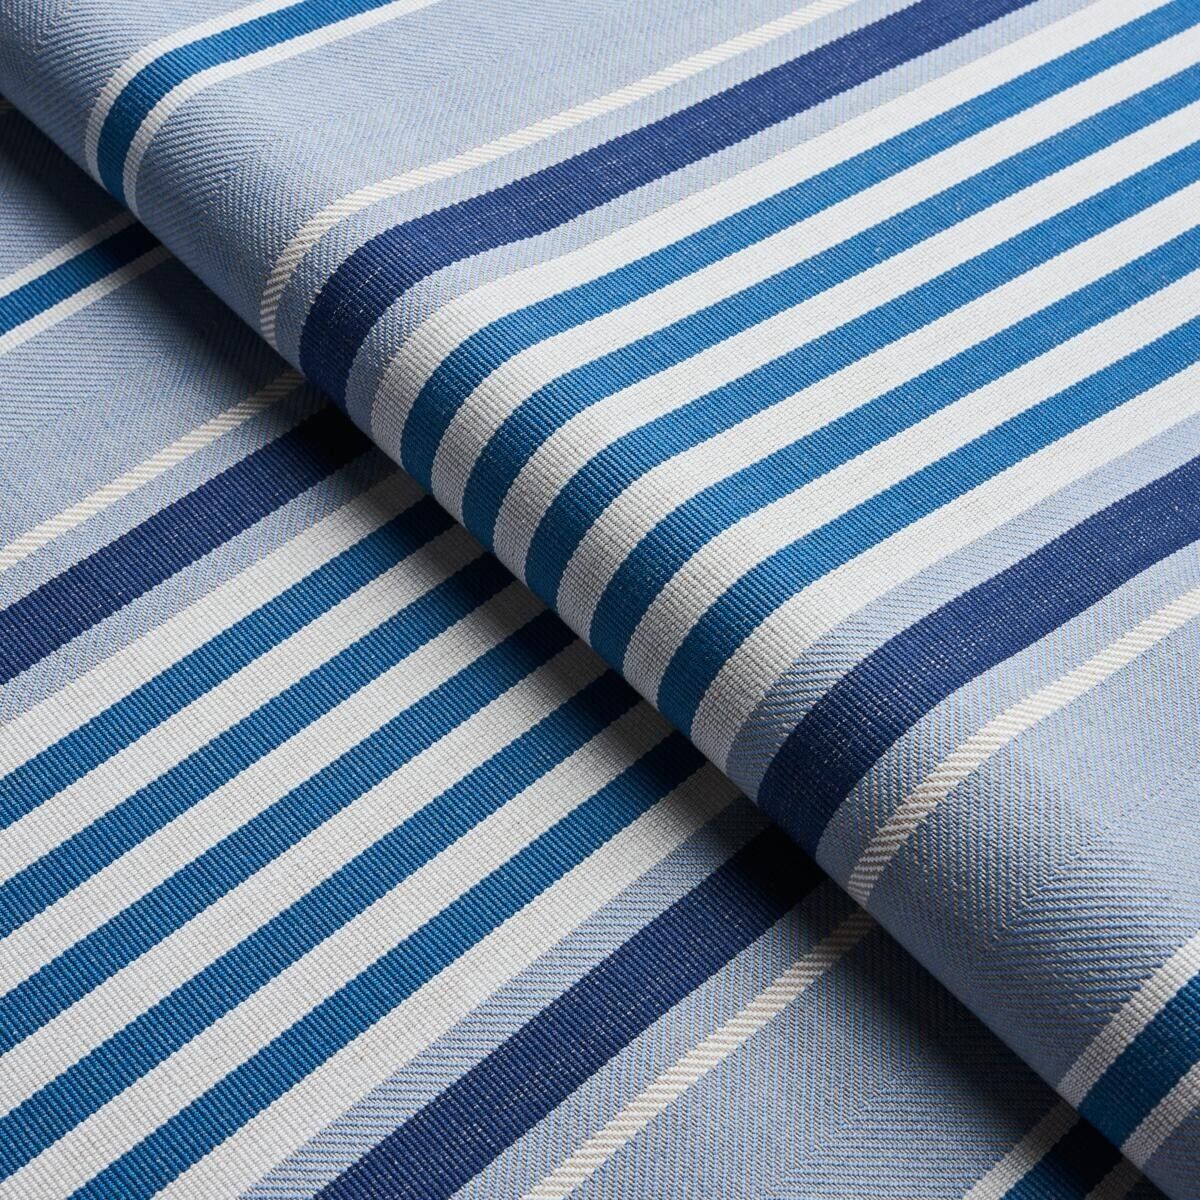 Schumacher Versatile Striped Fabric - Minzer Cotton Stripe / Blue 3.35 yds 66014